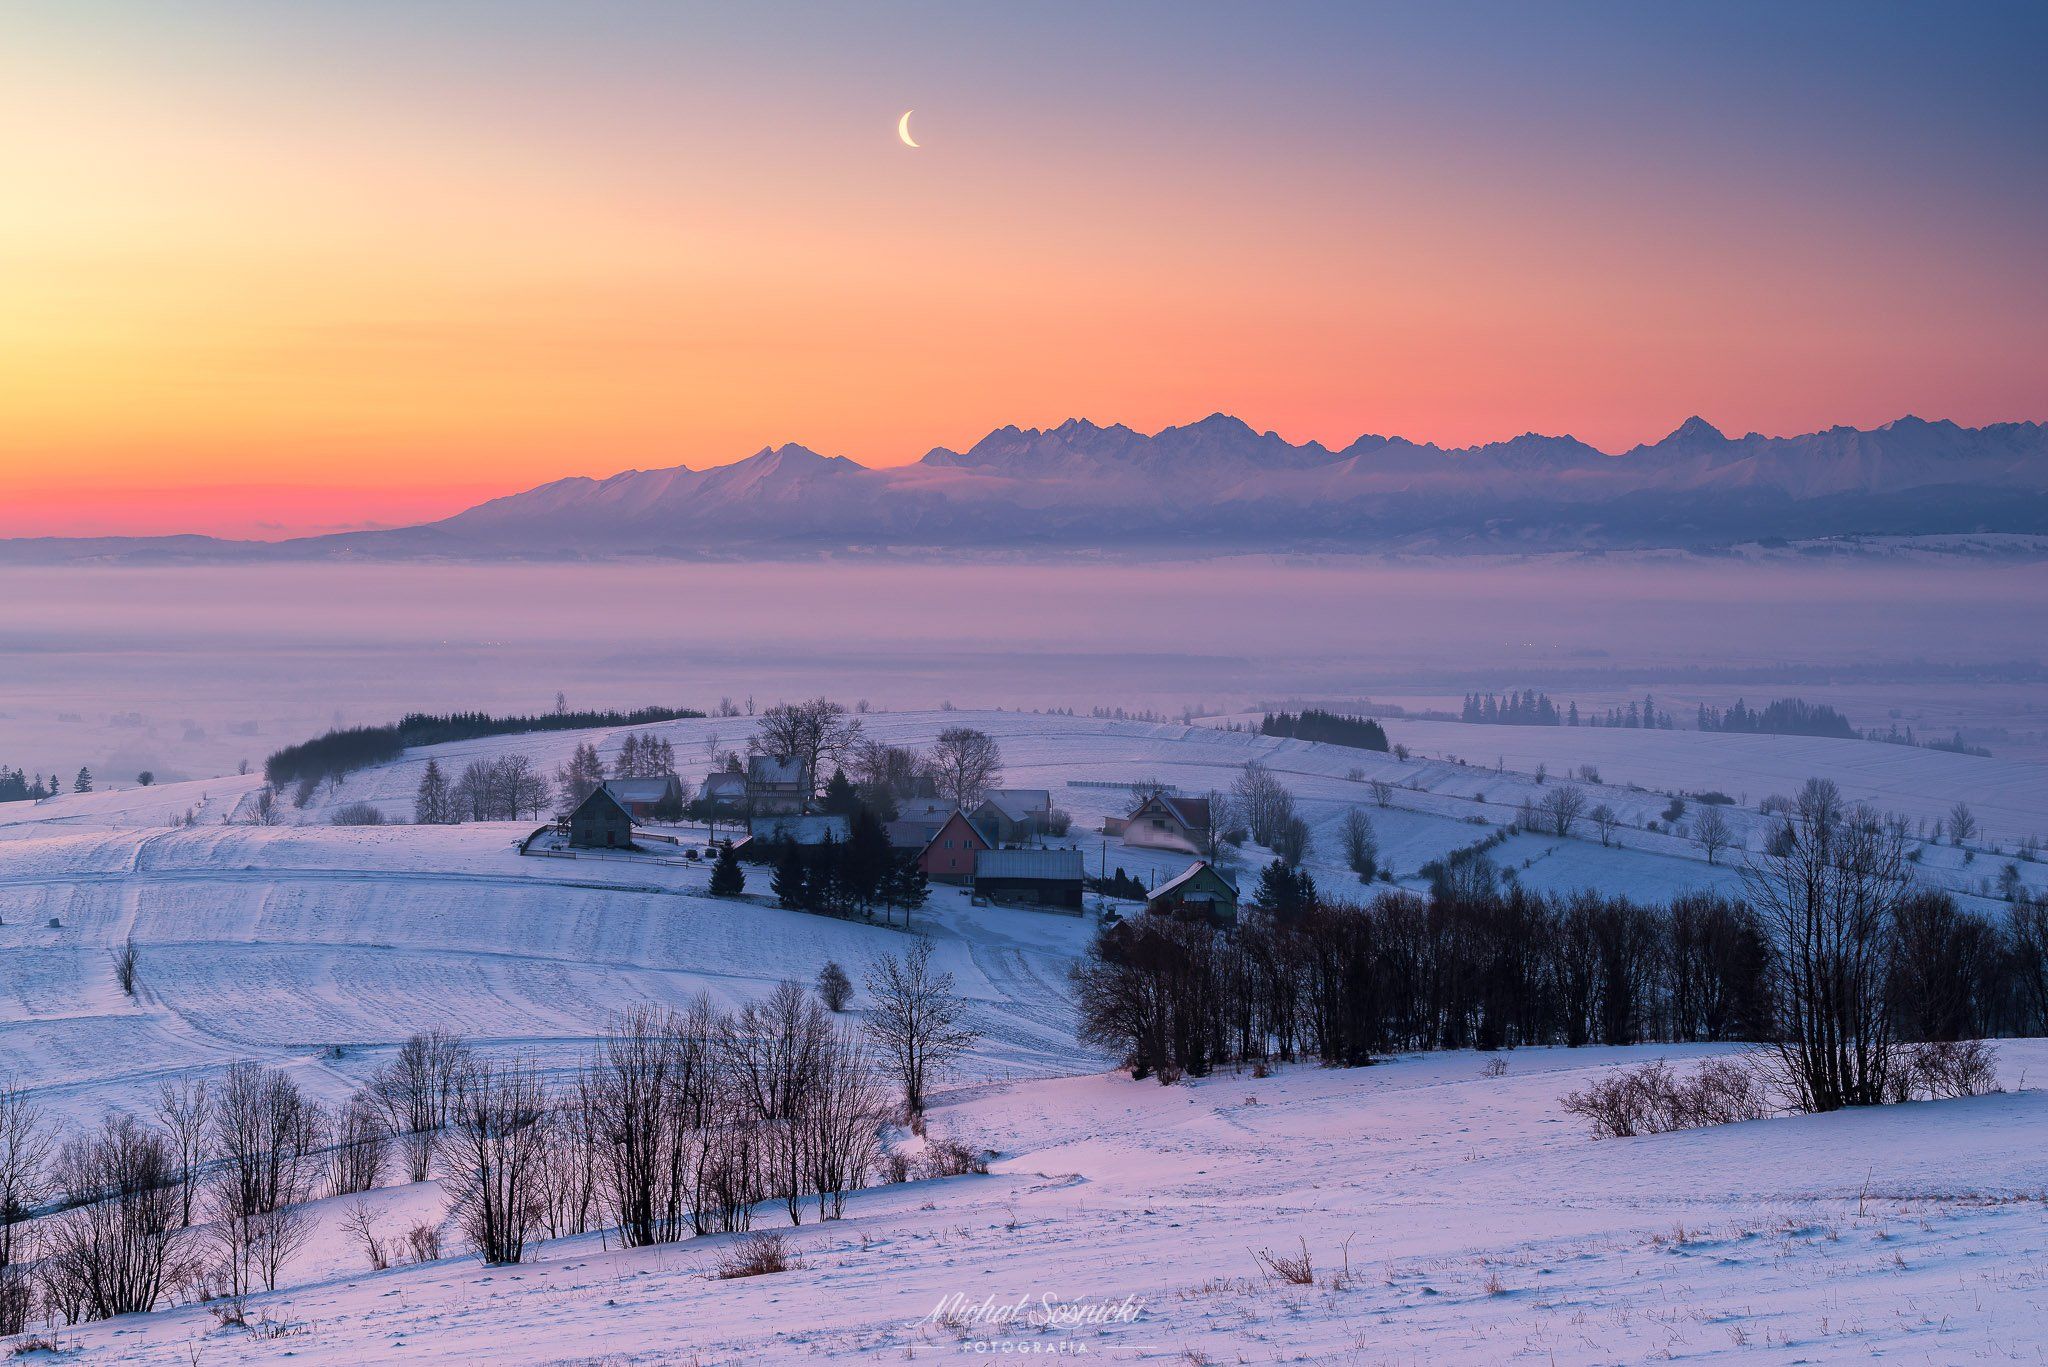 #mountains #poland #sunrise #snow #winter #morning #sky #beautiful #moon, Michał Sośnicki